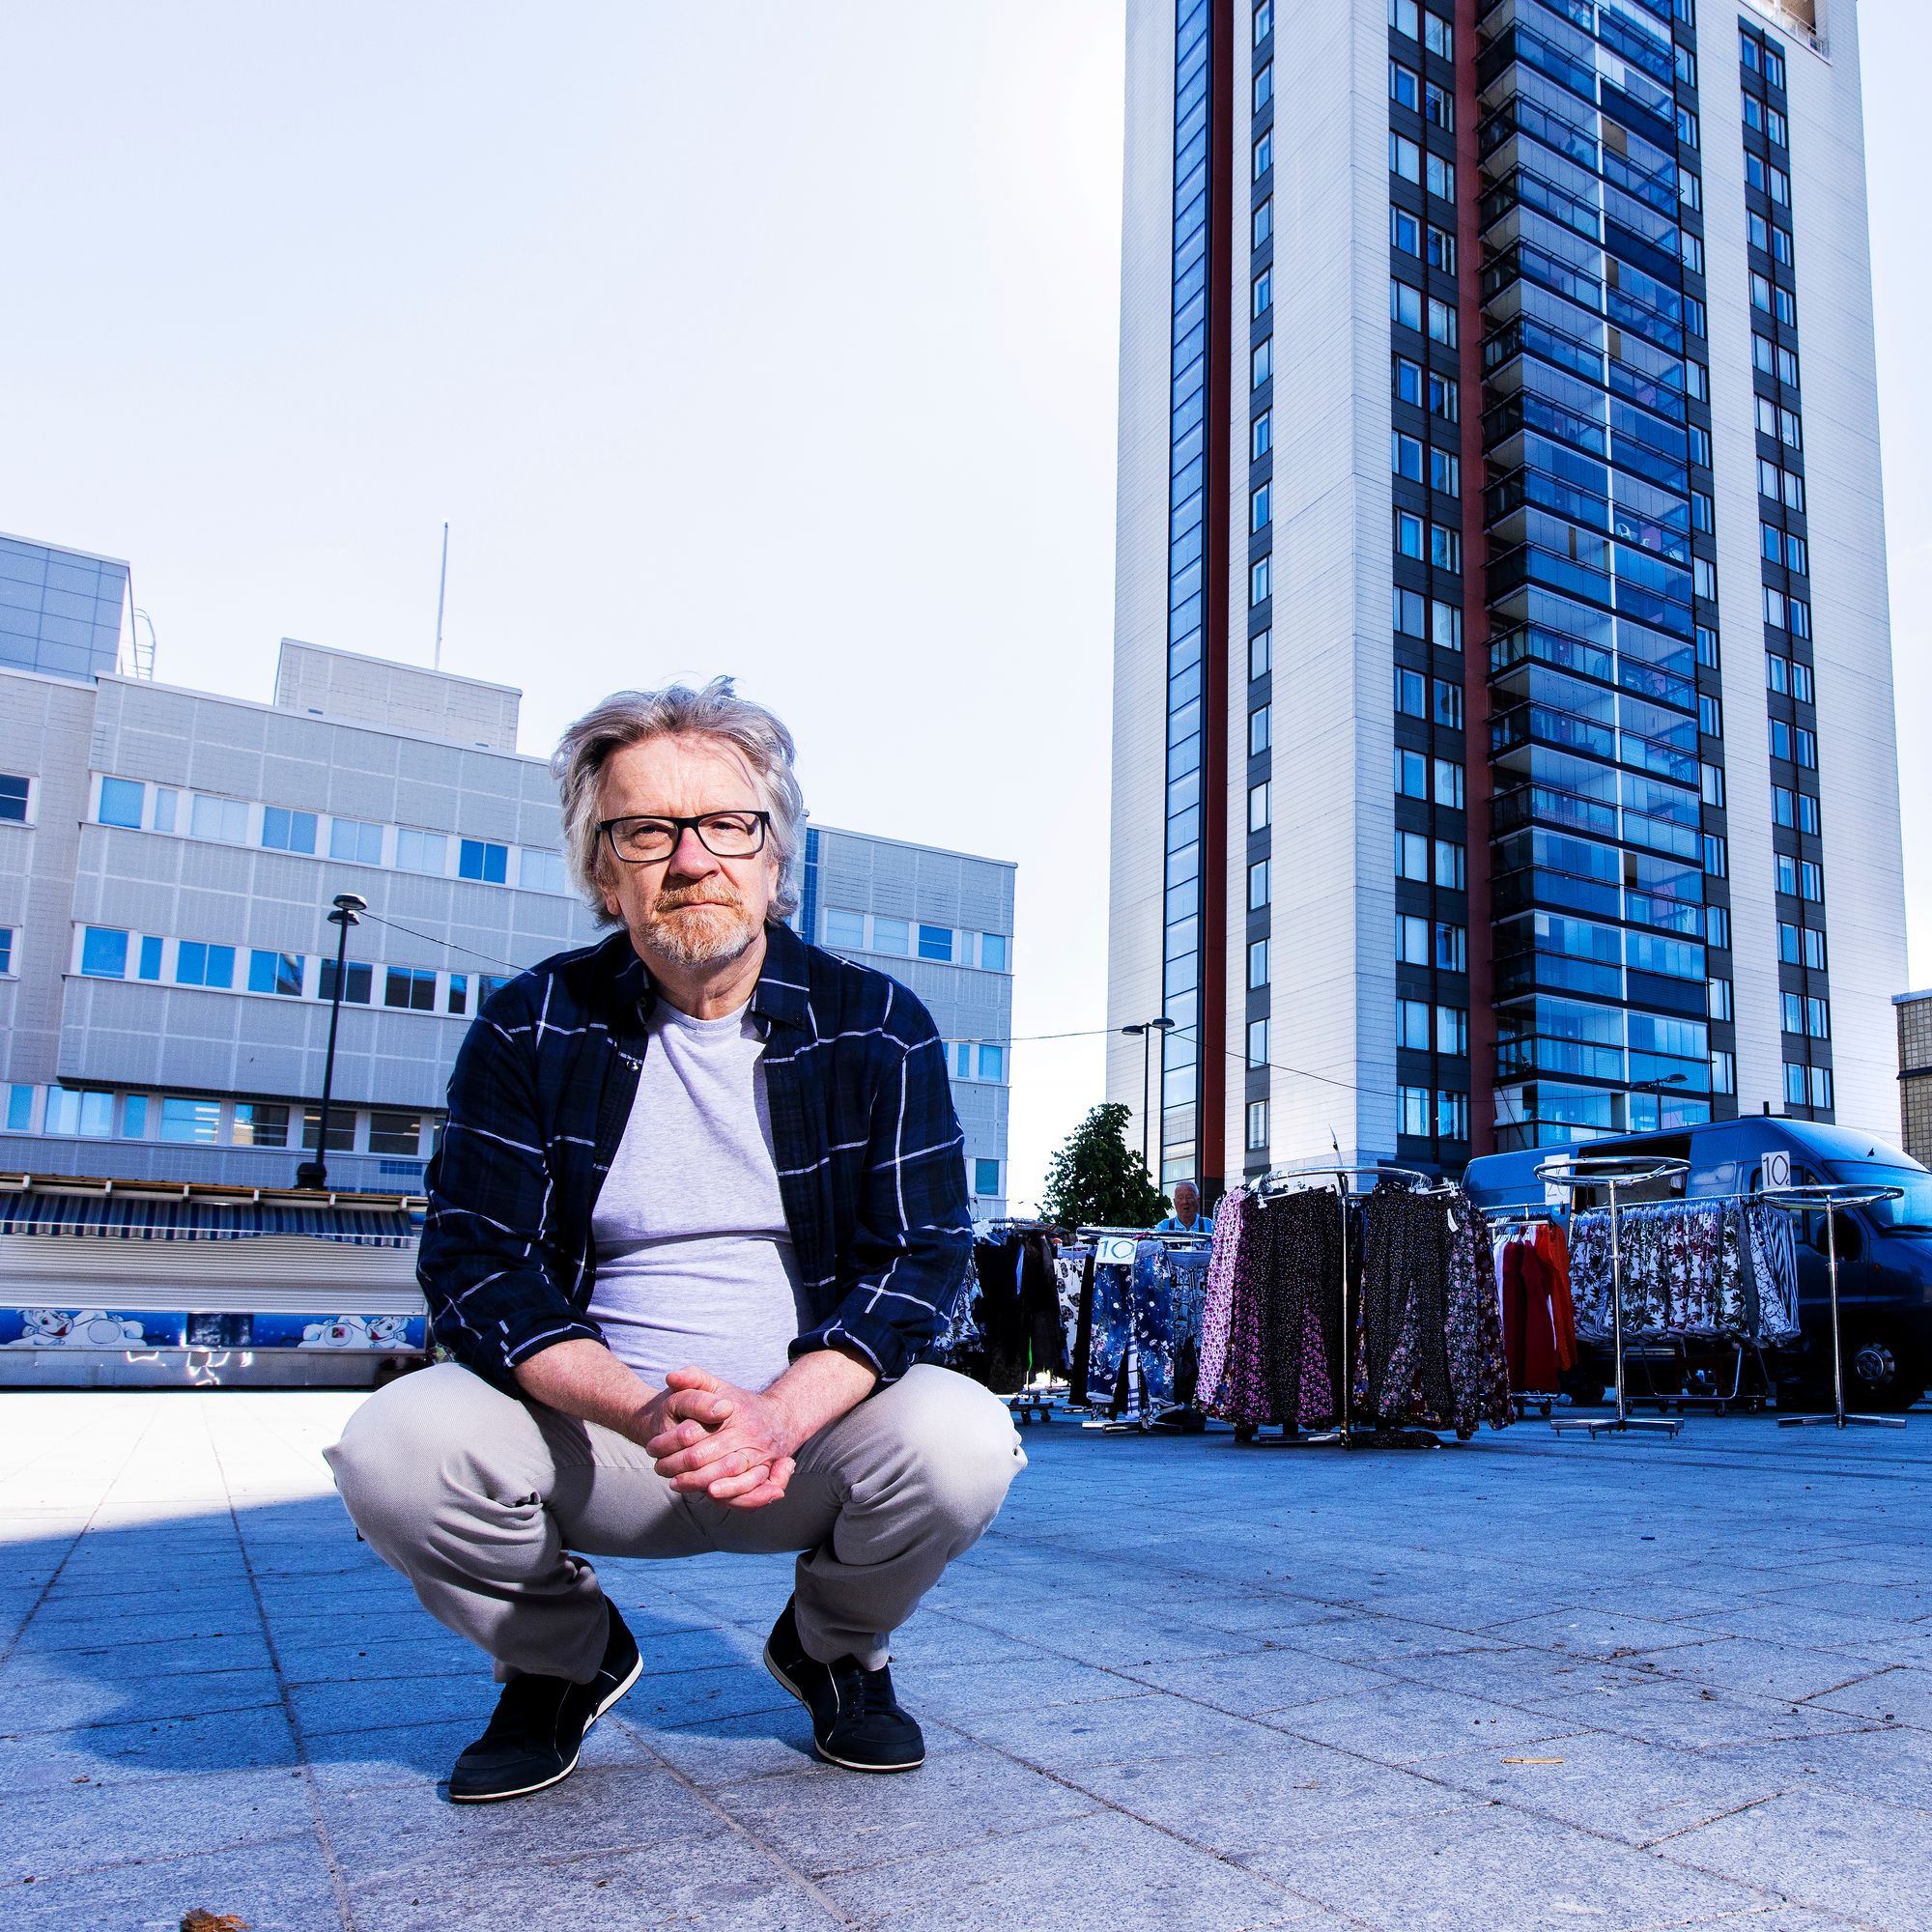 Enqvist jäi eläkkeelle Helsingin yliopiston professorin virastaan vuonna 2019. Hän kirjoitti ensitöikseen romaanin. © Tommi Tuomi